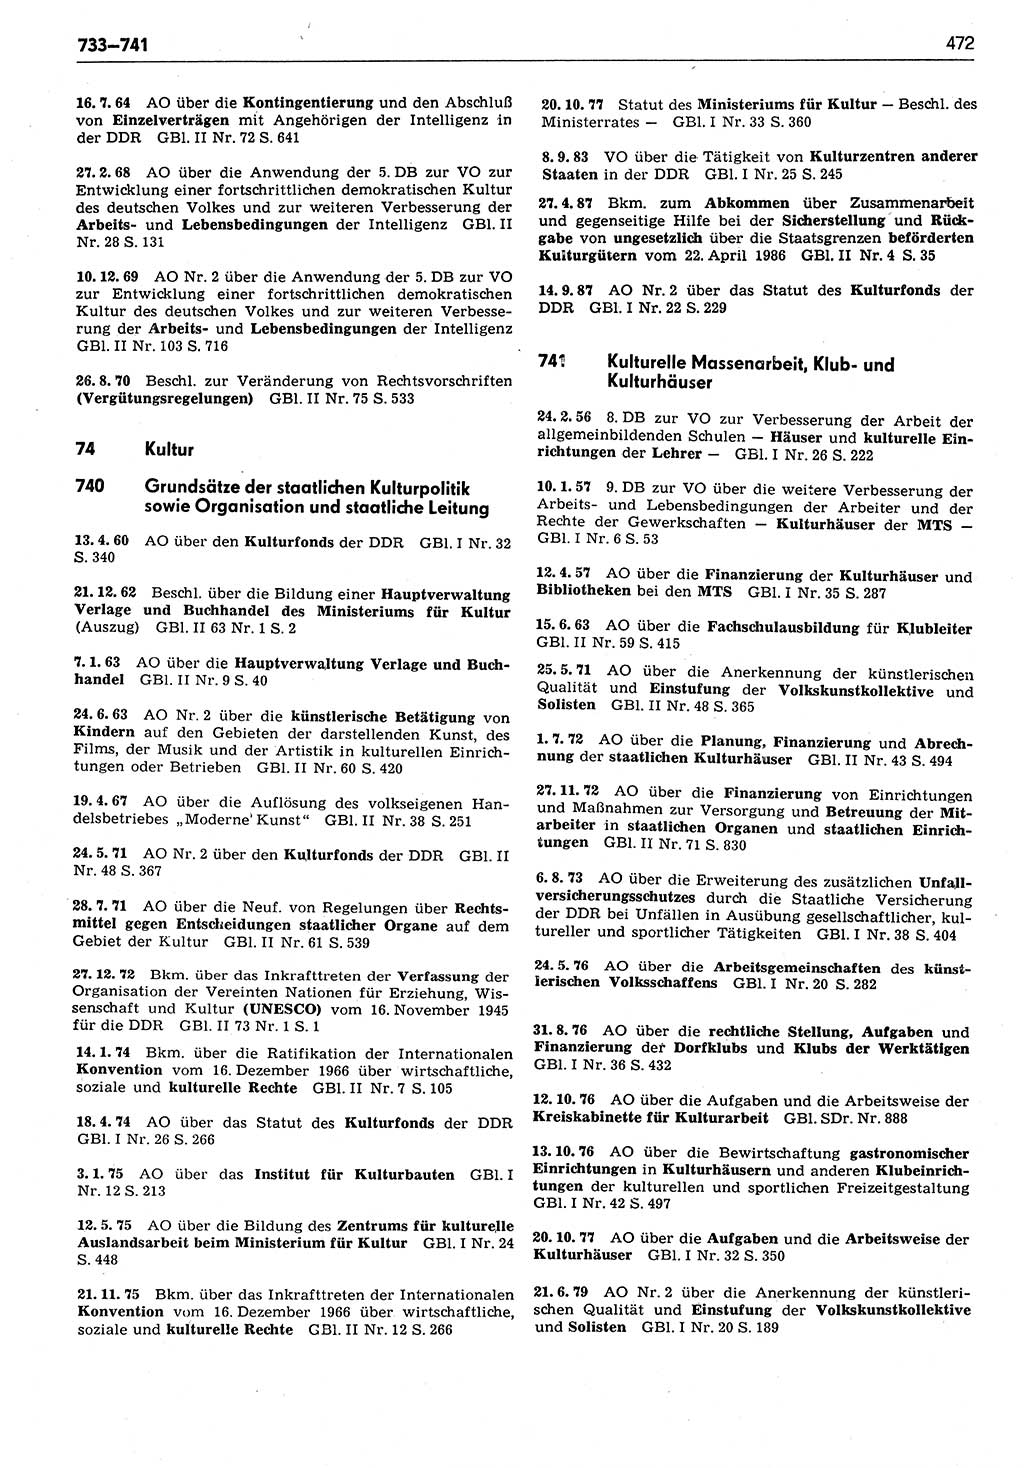 Das geltende Recht der Deutschen Demokratischen Republik (DDR) 1949-1988, Seite 472 (Gelt. R. DDR 1949-1988, S. 472)